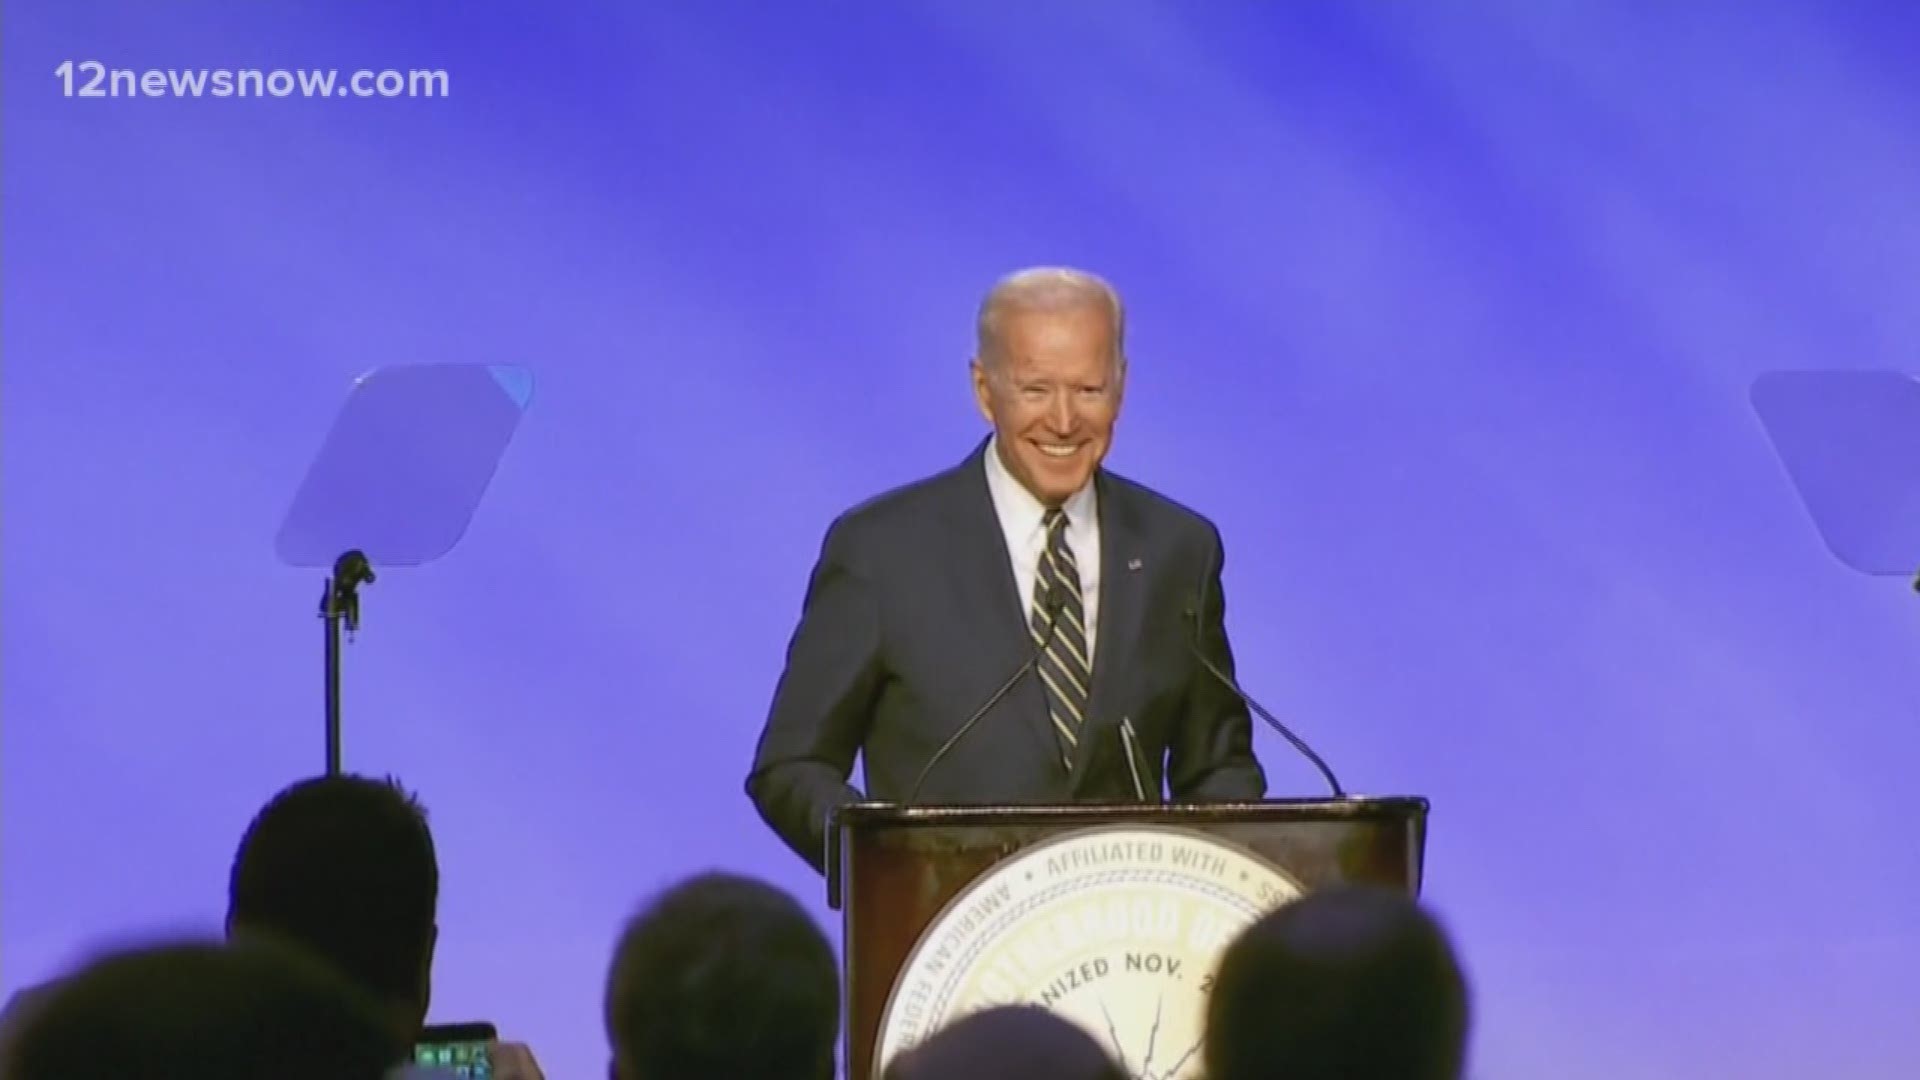 Biden announces entry into 2020 presidential race